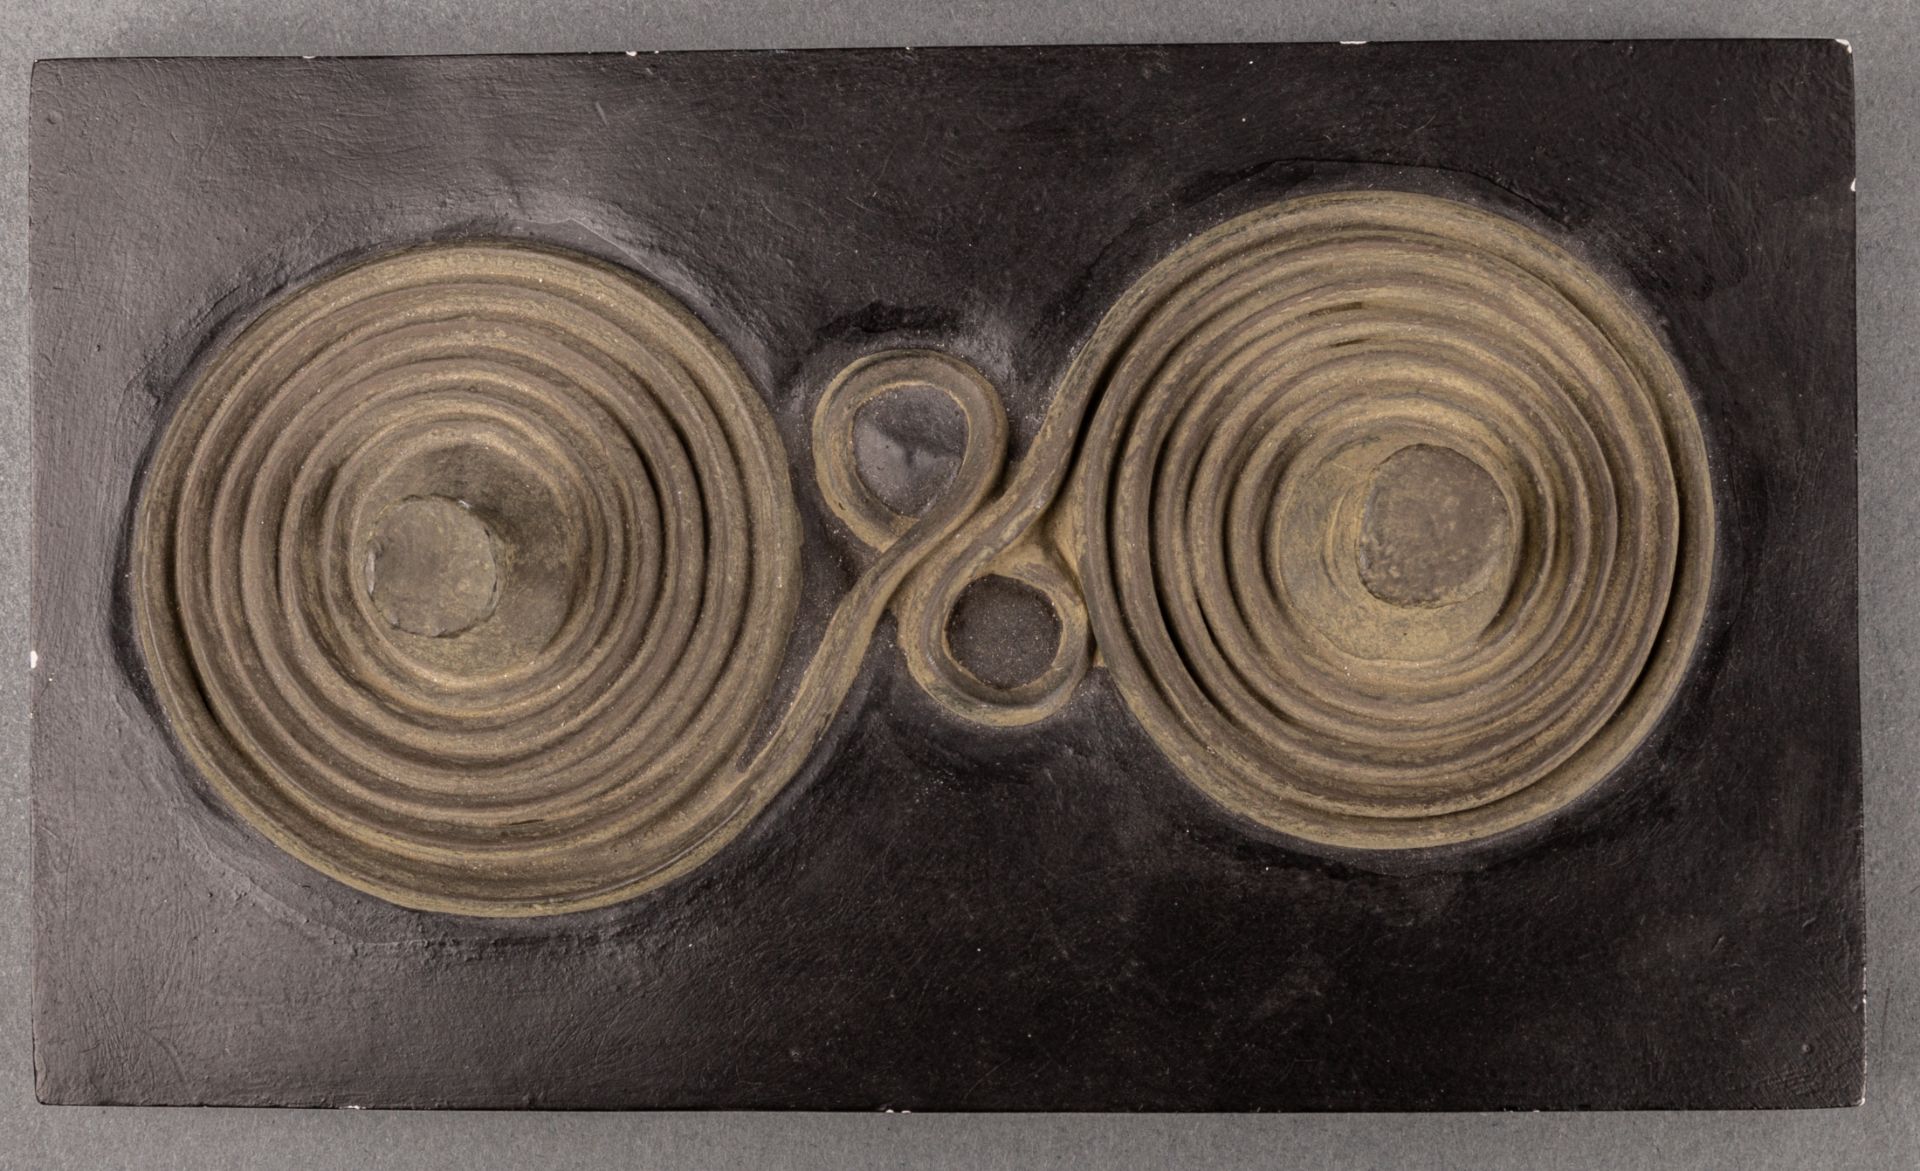 Museumskopie einer Spiralbrillenfibel - Bild 2 aus 2